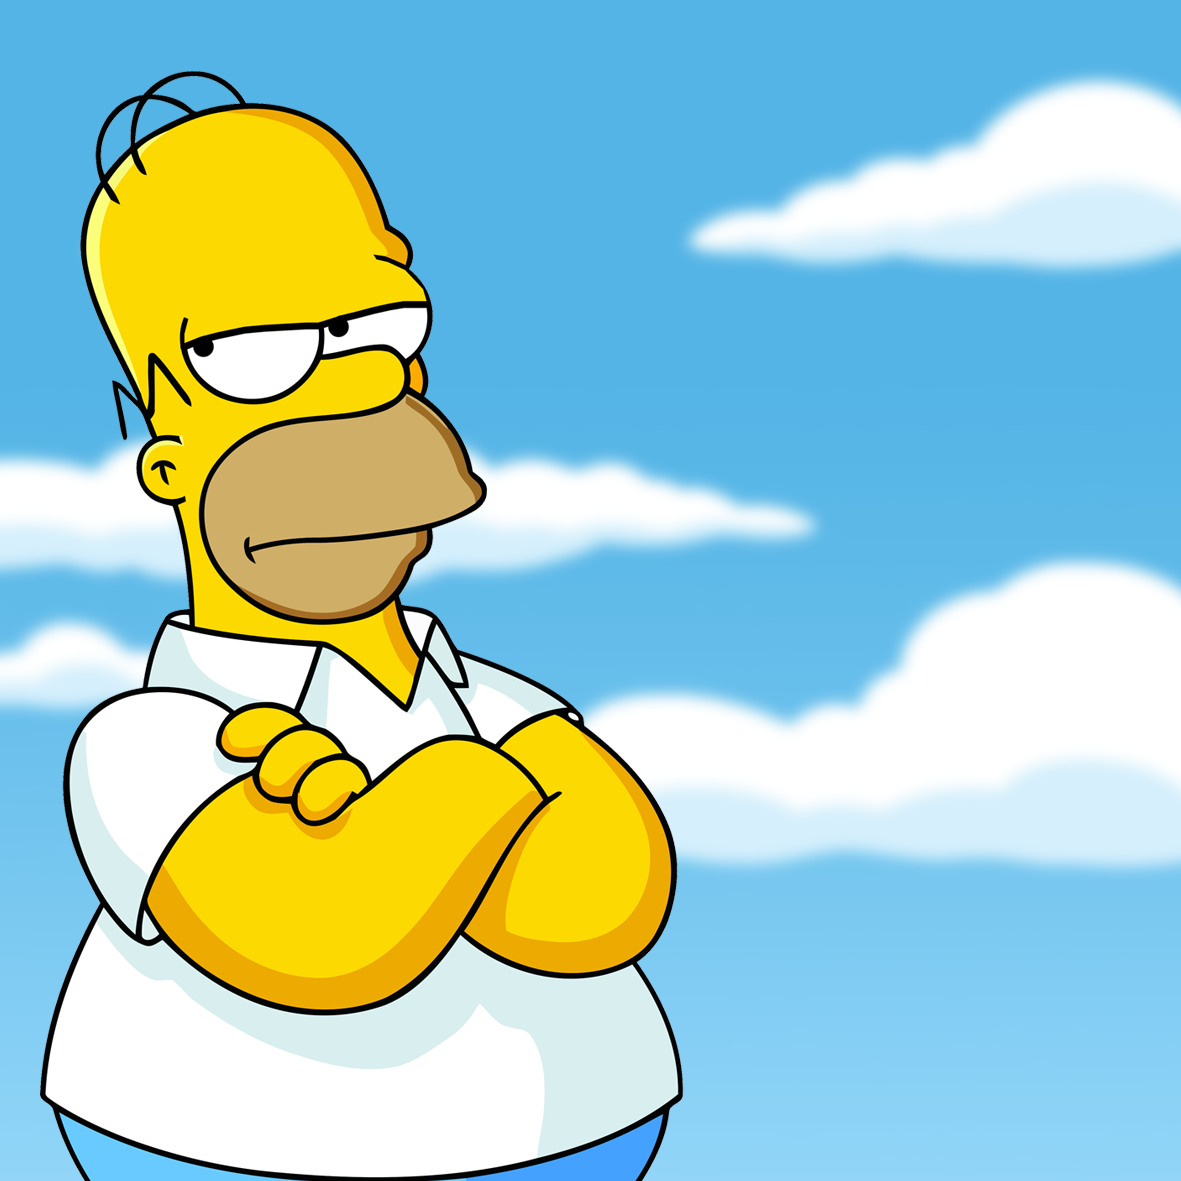 Homer Simpson - Arms Crossed Blank Meme Template